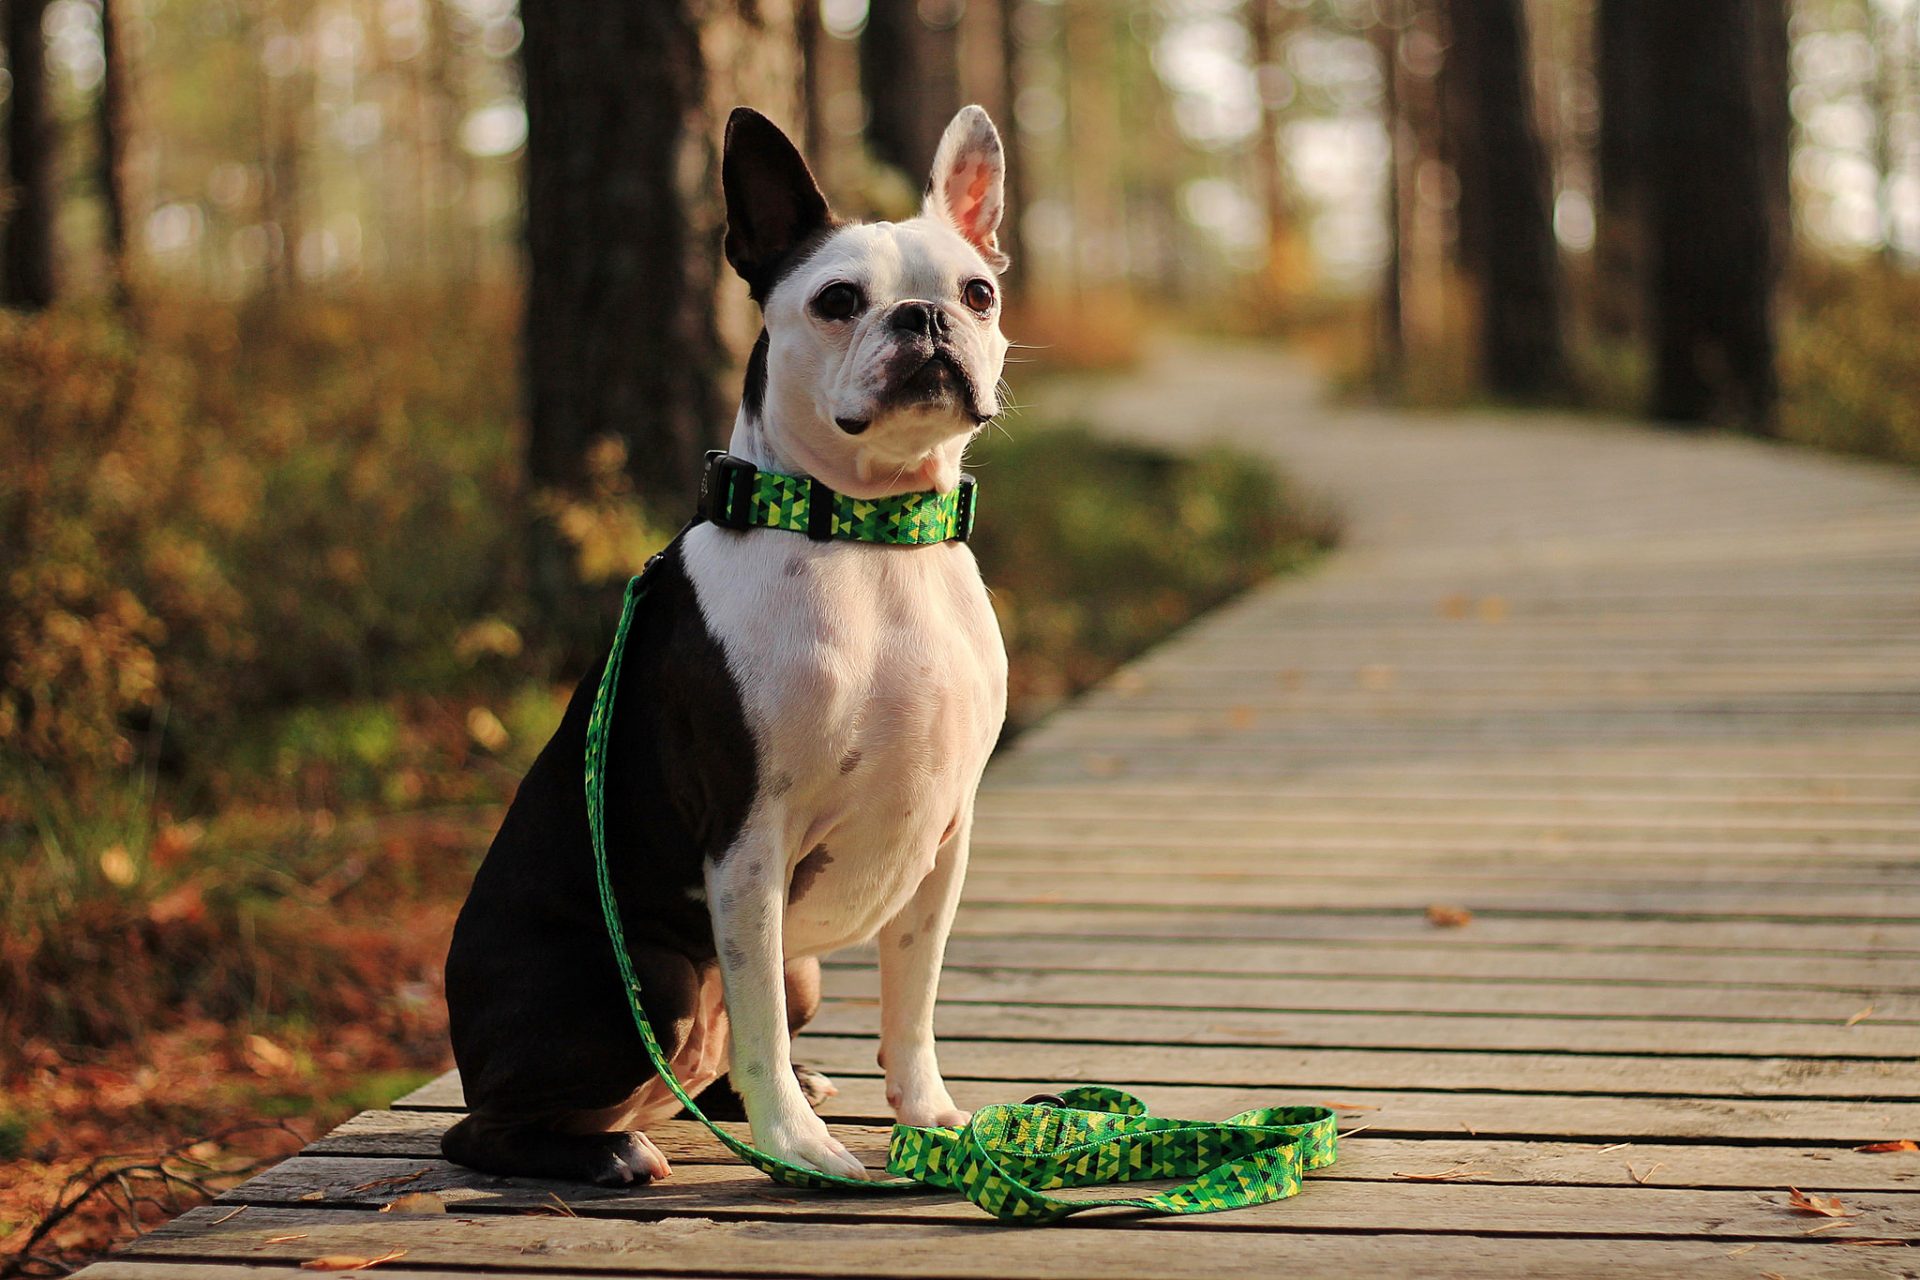 smycz obroża shine in lime zielony zestaw spacerowy buldog francuski Warsaw Dog